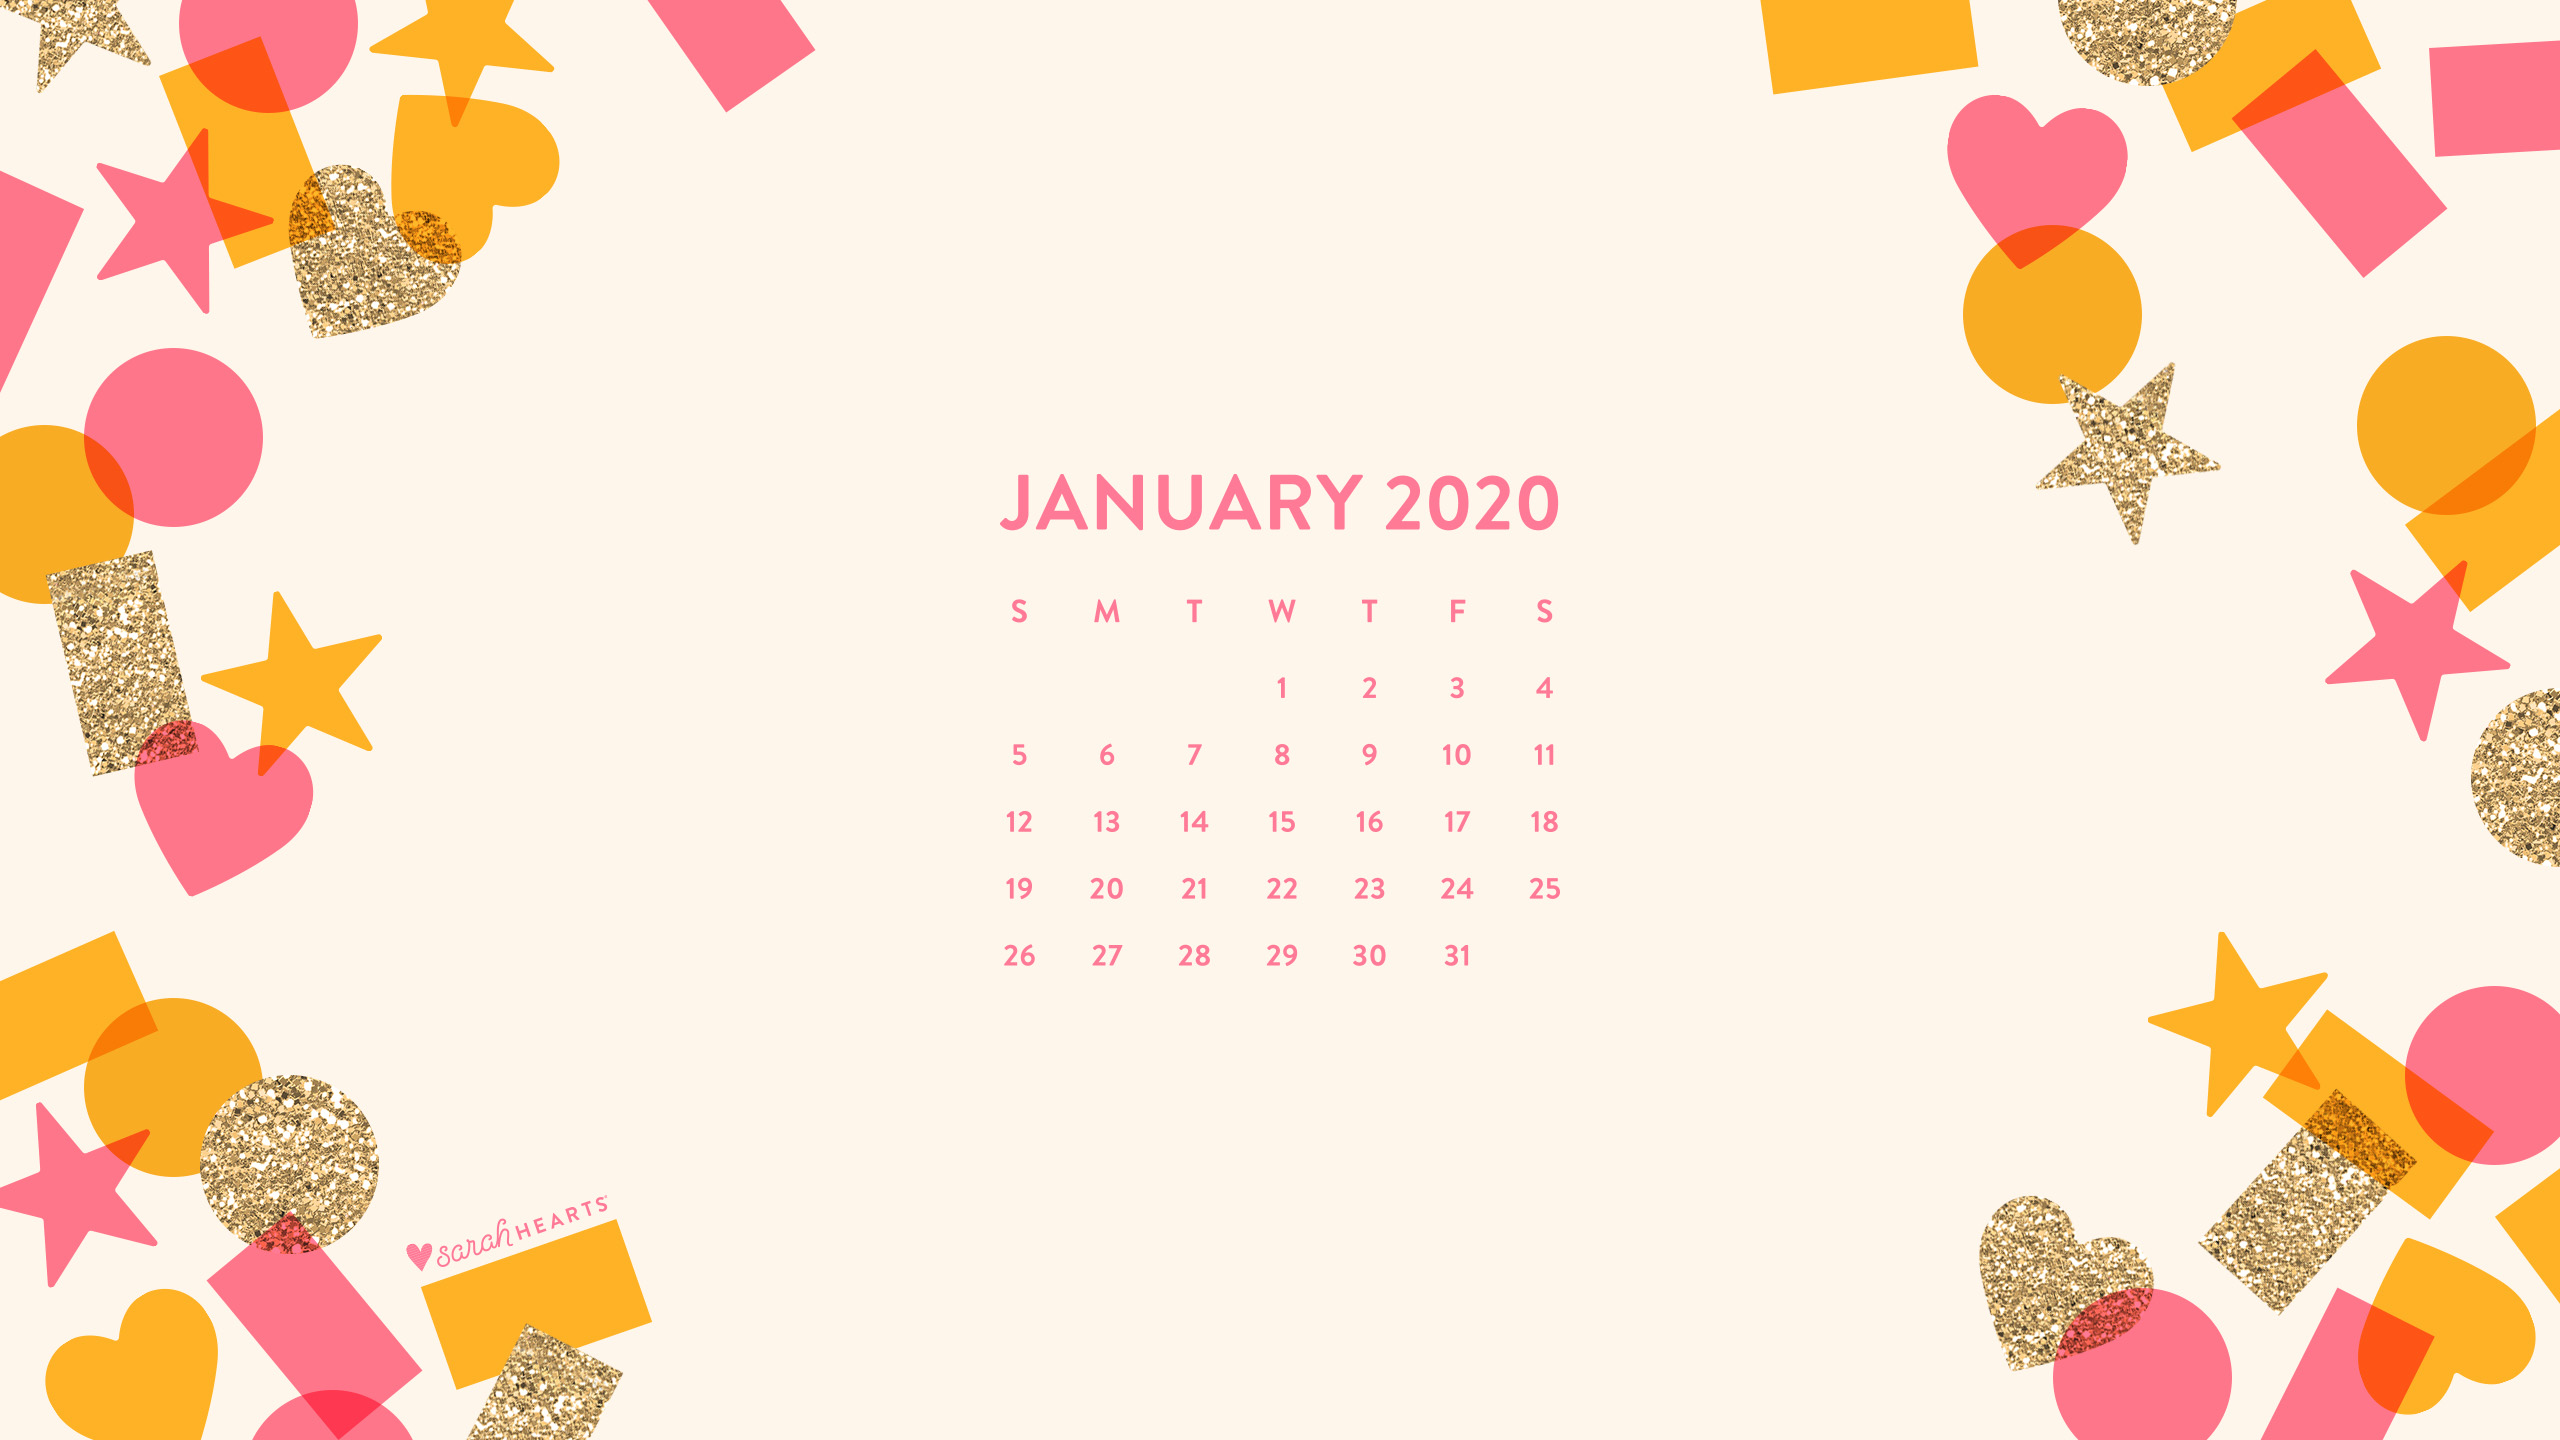 January 2020 Confetti Calendar Wallpaper   Sarah Hearts